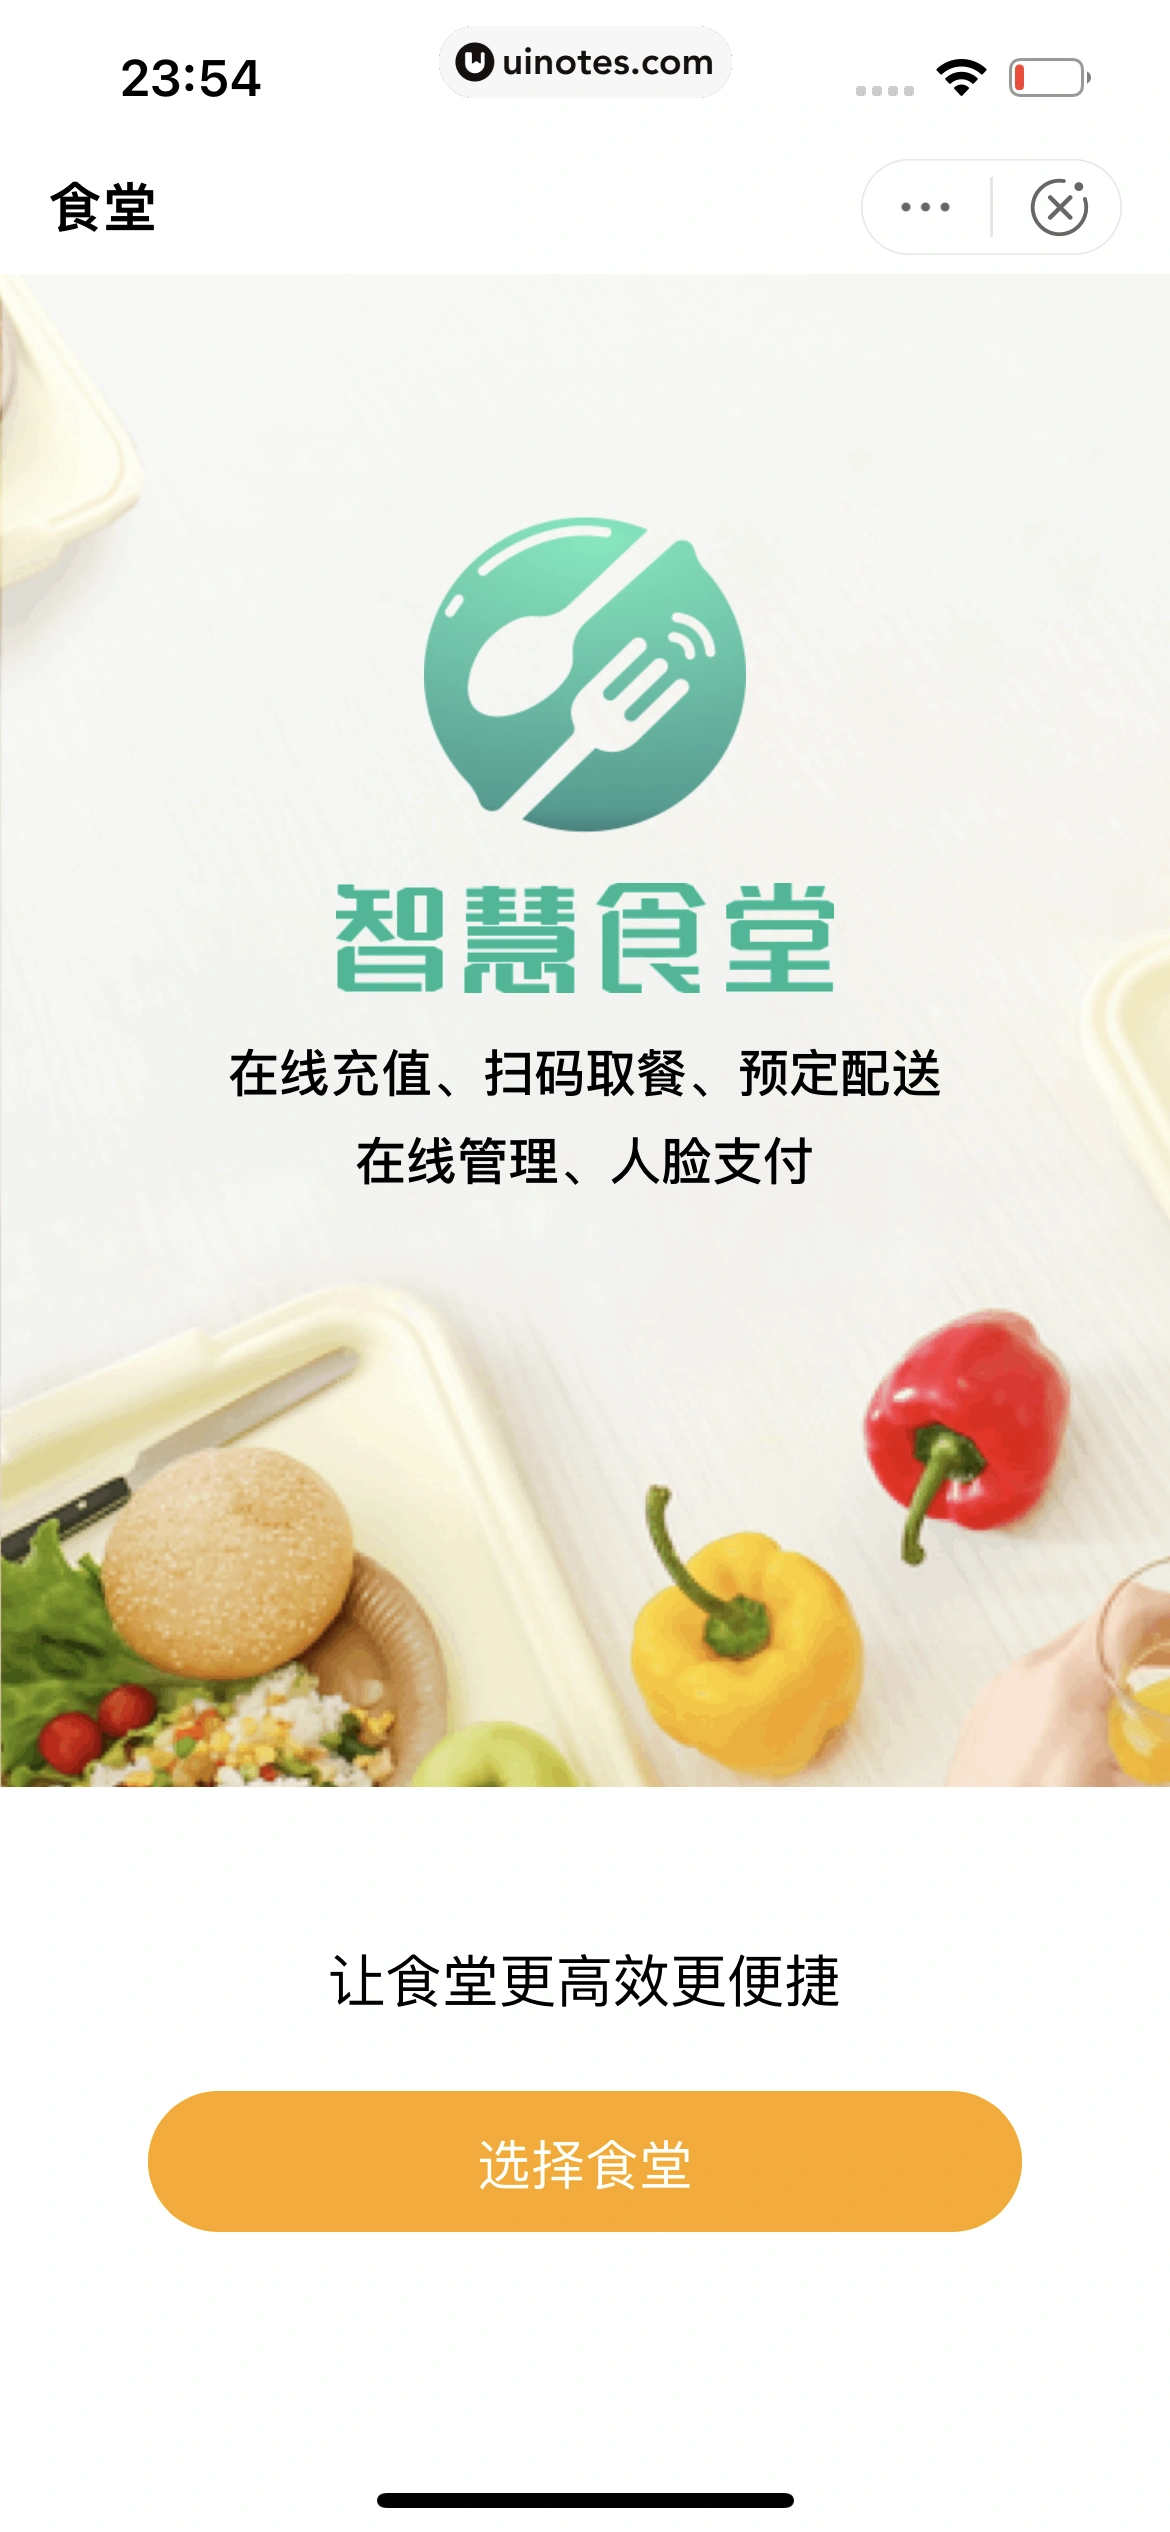 中国农业银行 App 截图 221 - UI Notes